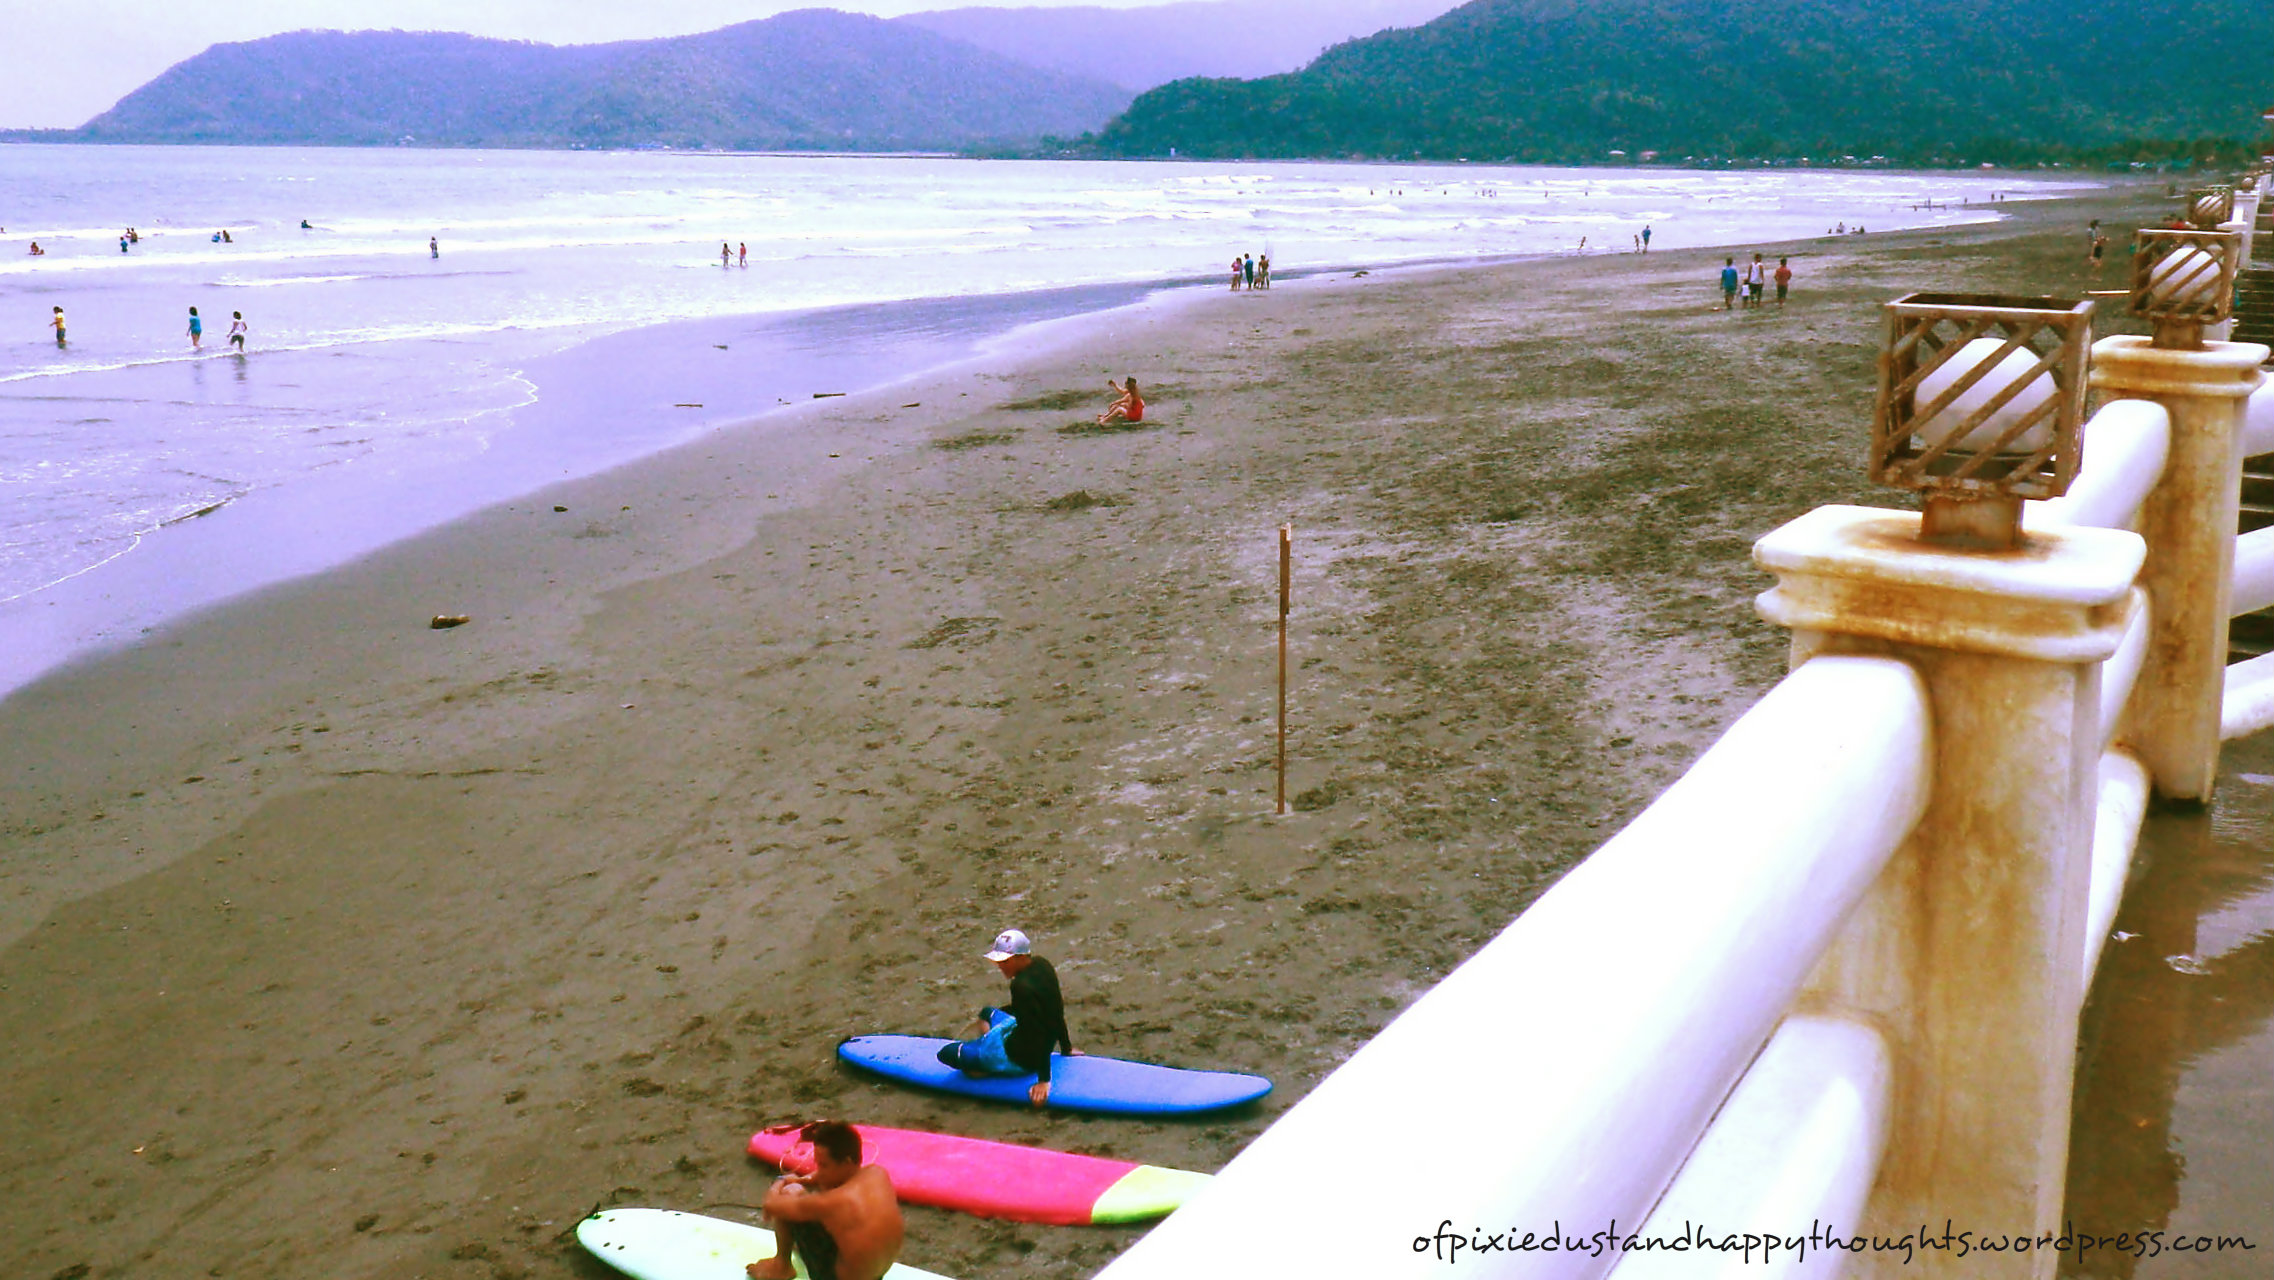 Dienstagsthema-Tagesthema - REISEZIELE in Luzon. Sabang Beach in Baler